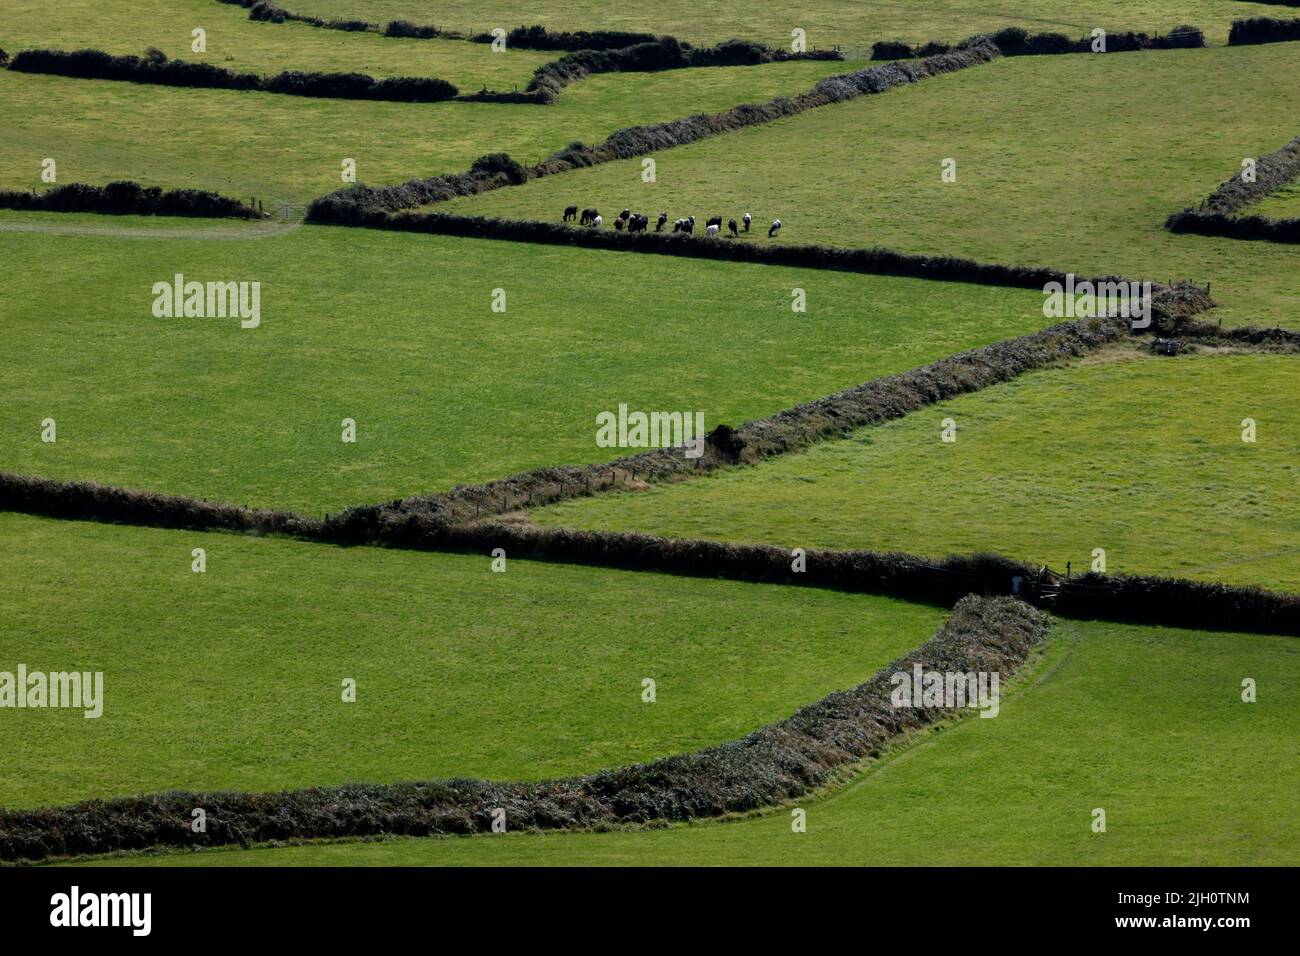 Cattle in the fields near St Nicholas, Pembrokeshire, Wales, UK Stock Photo